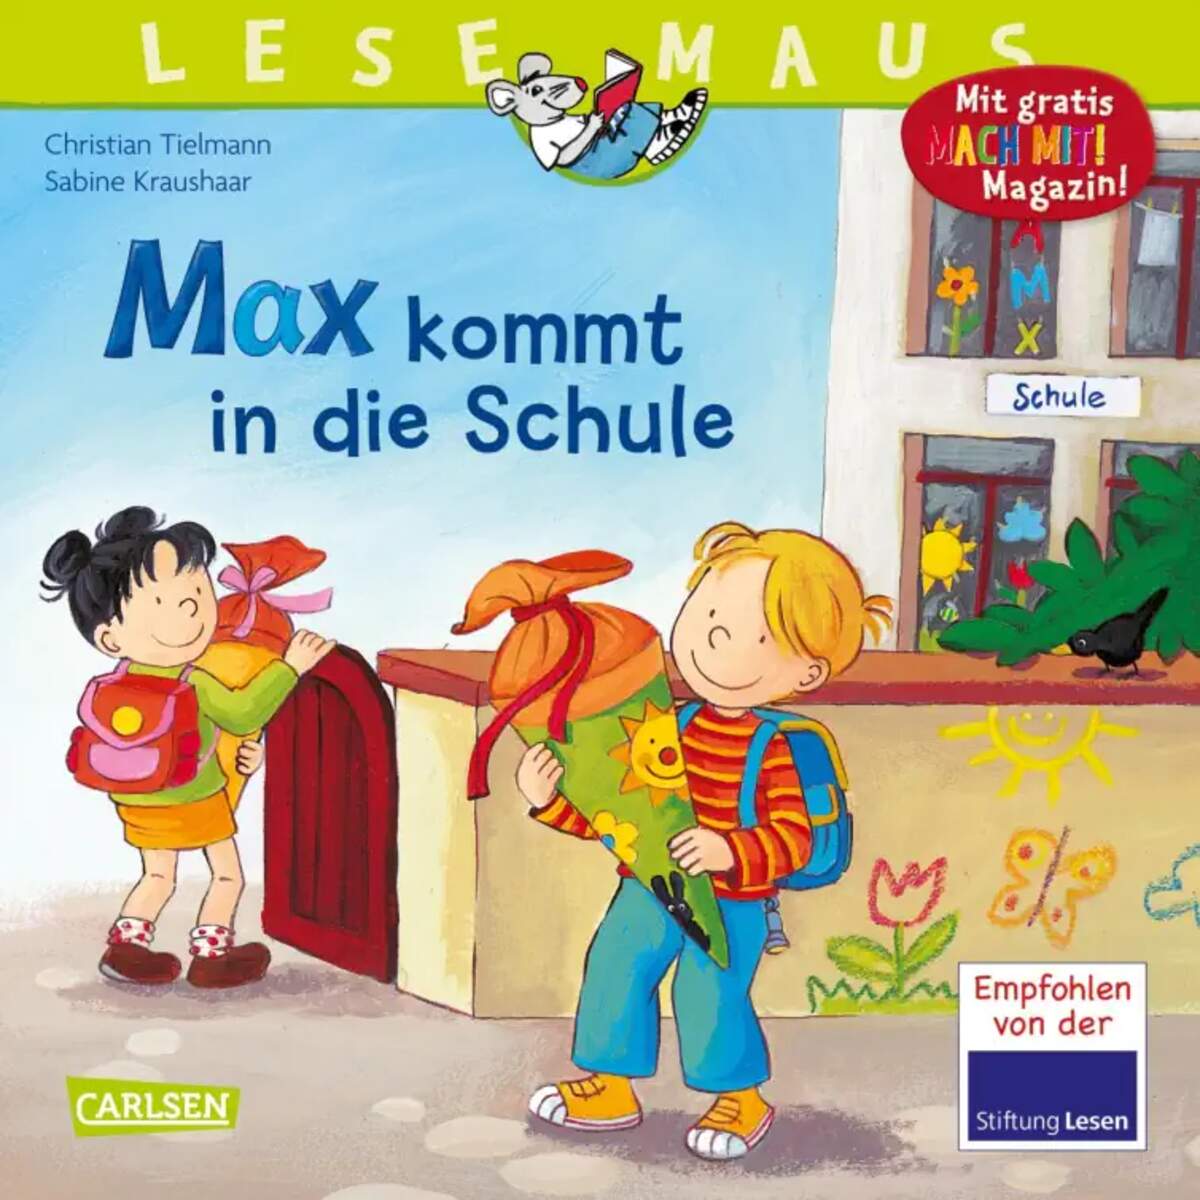 Carlsen Verlag LESEMAUS 70: Max kommt in die Schule